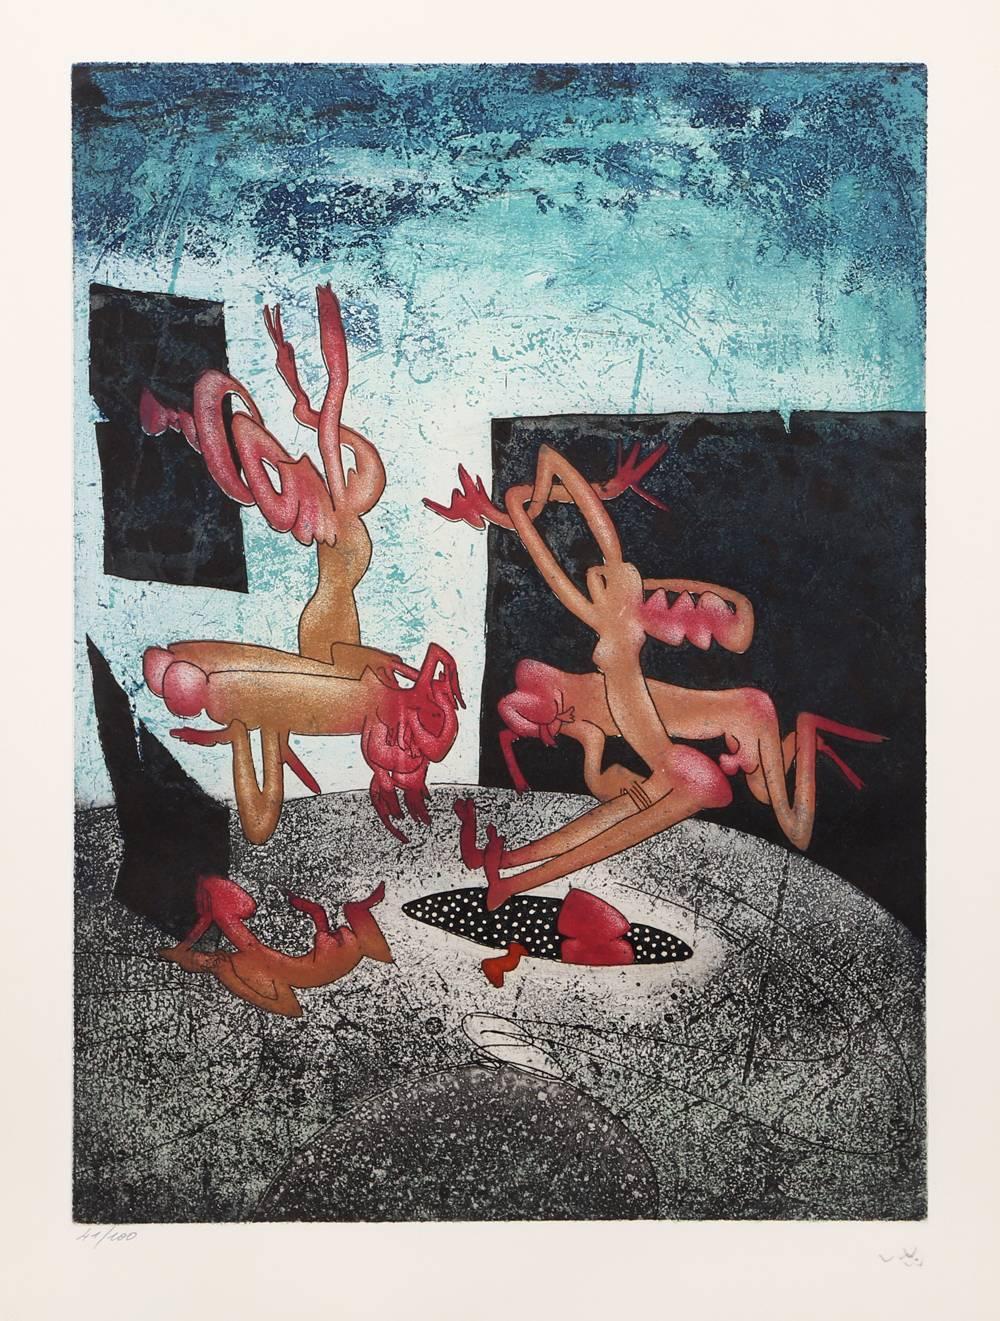 Artiste : Roberto Matta, chilien (1911 - 2002)
Titre : La Danse de la Mort - Planche 1-8
Année : 1972
Médium : Suite de 8 gravures à l'eau-forte, chacune signée et numérotée au crayon
Edition : 41/100
Taille de l'image : 20.75 x 15.25 pouces
Taille